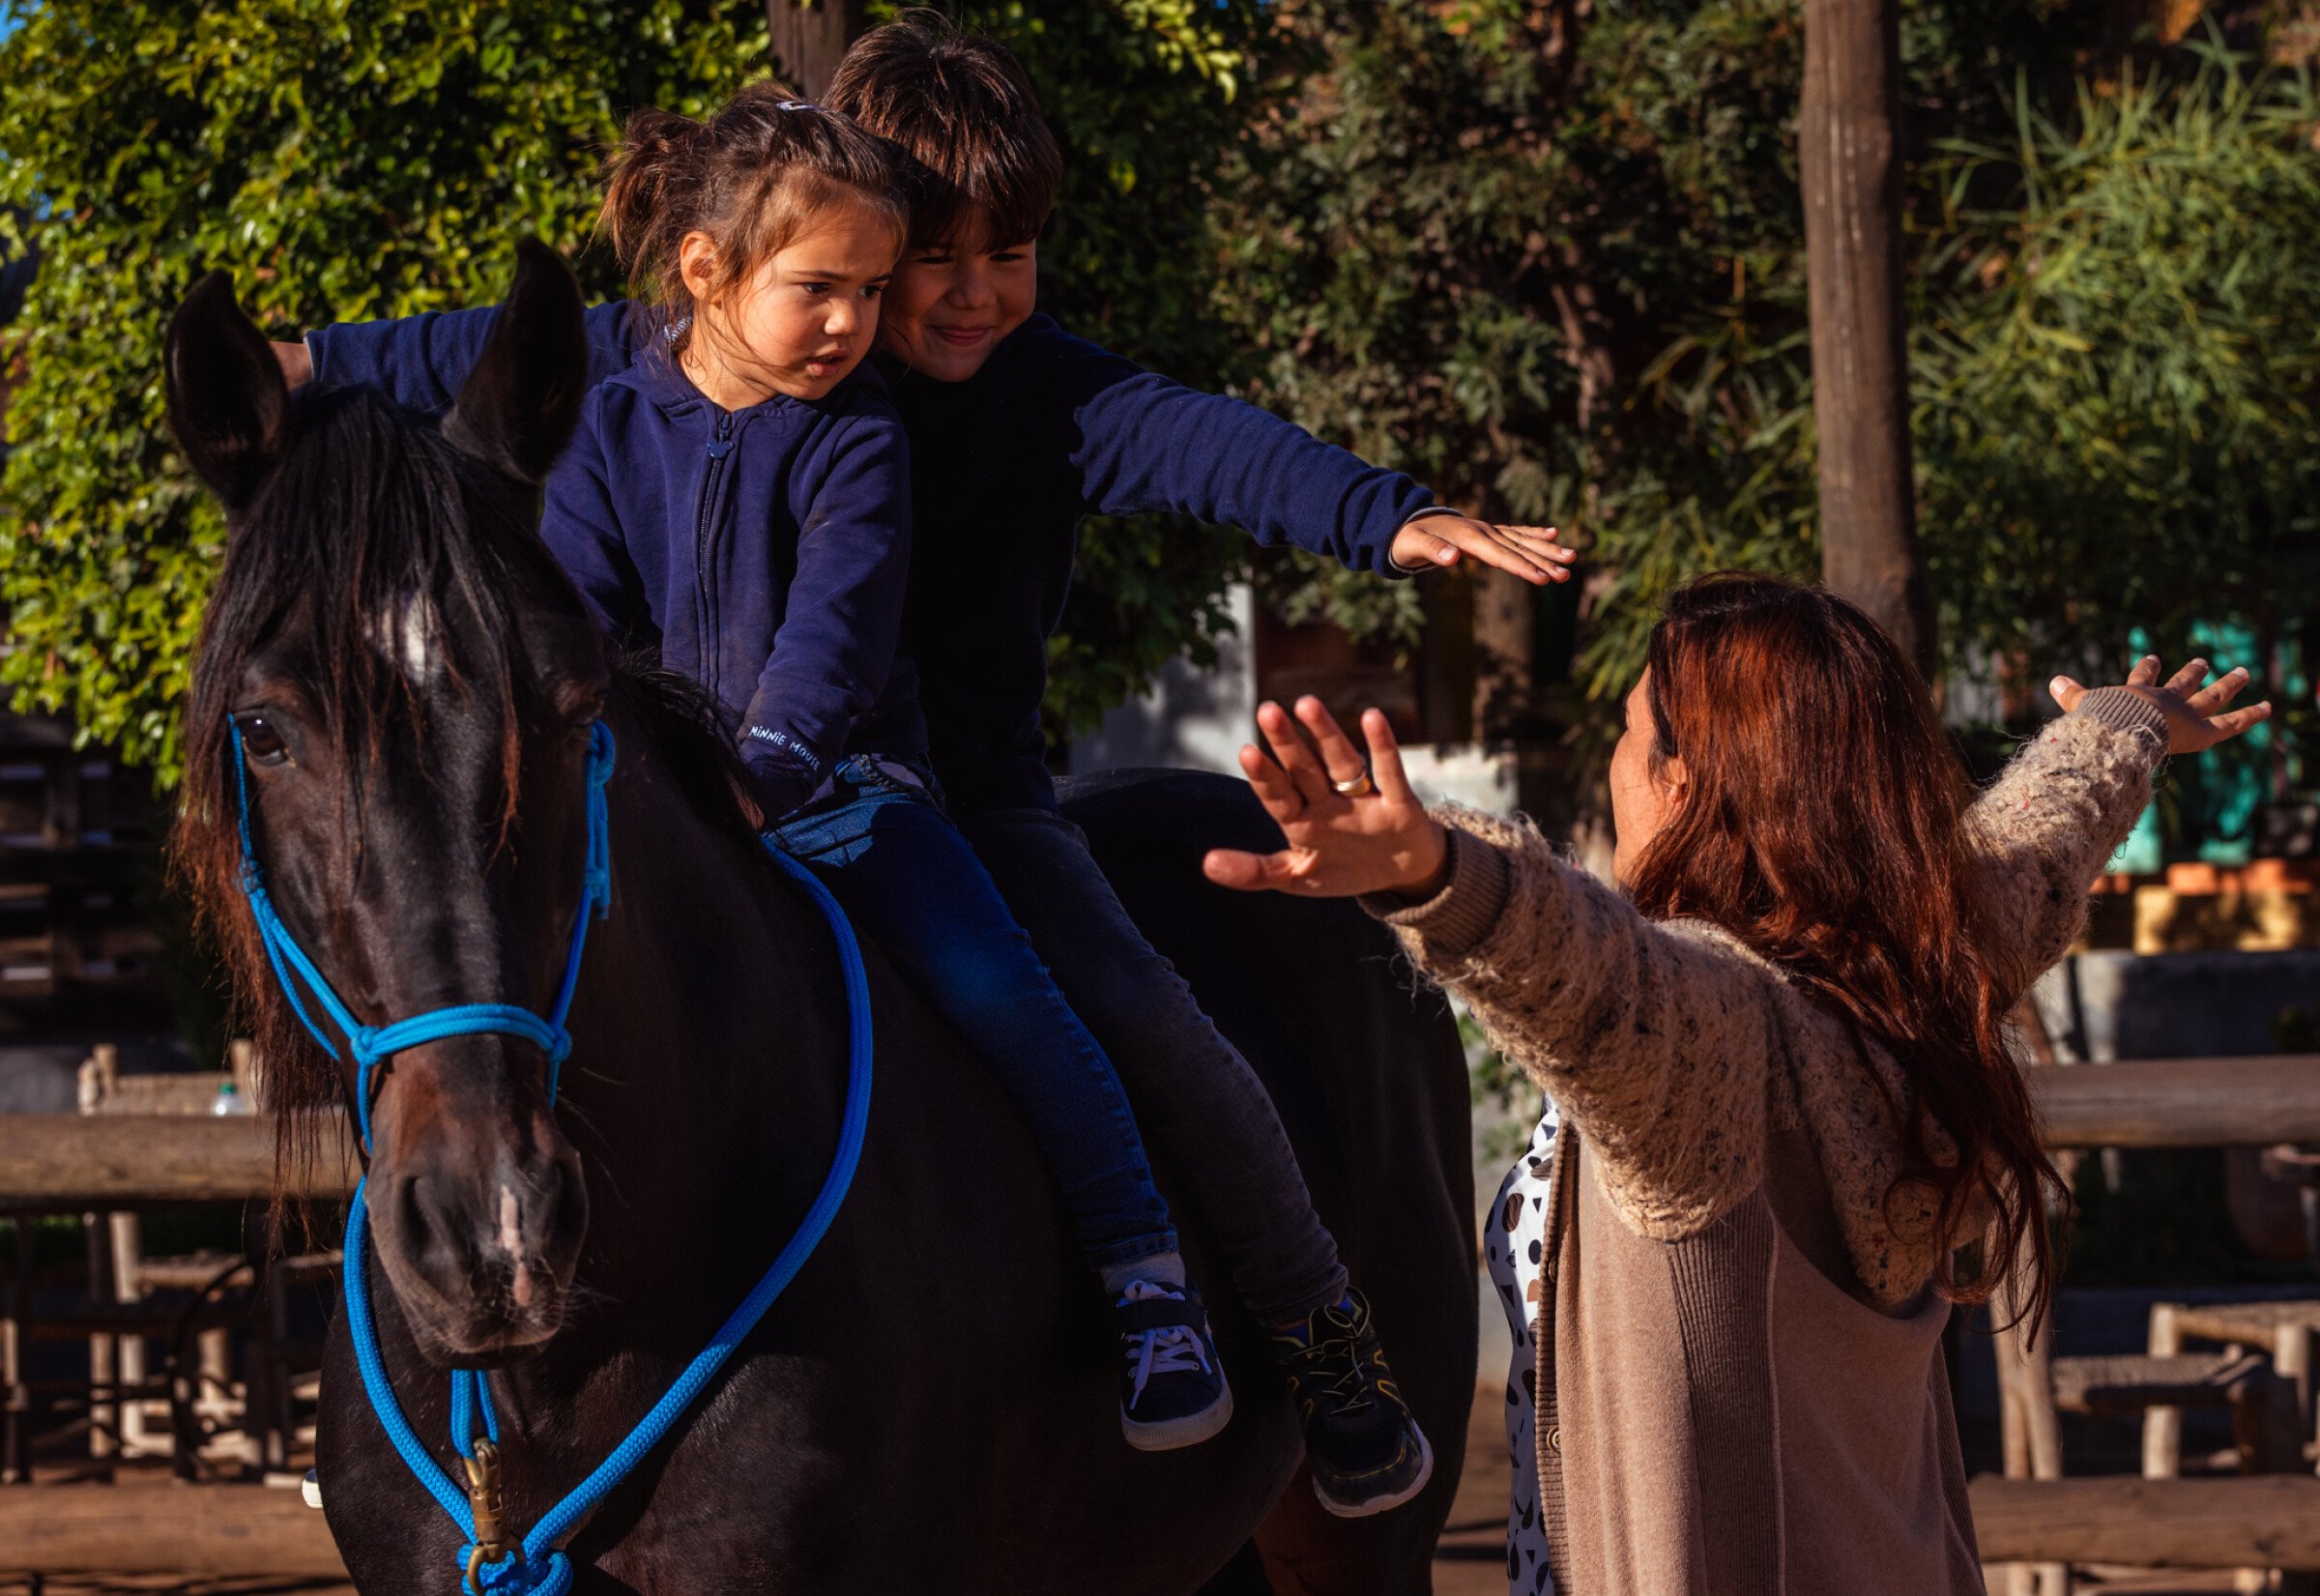 Marocco con i bambini: un’esperienza per tutta la famiglia